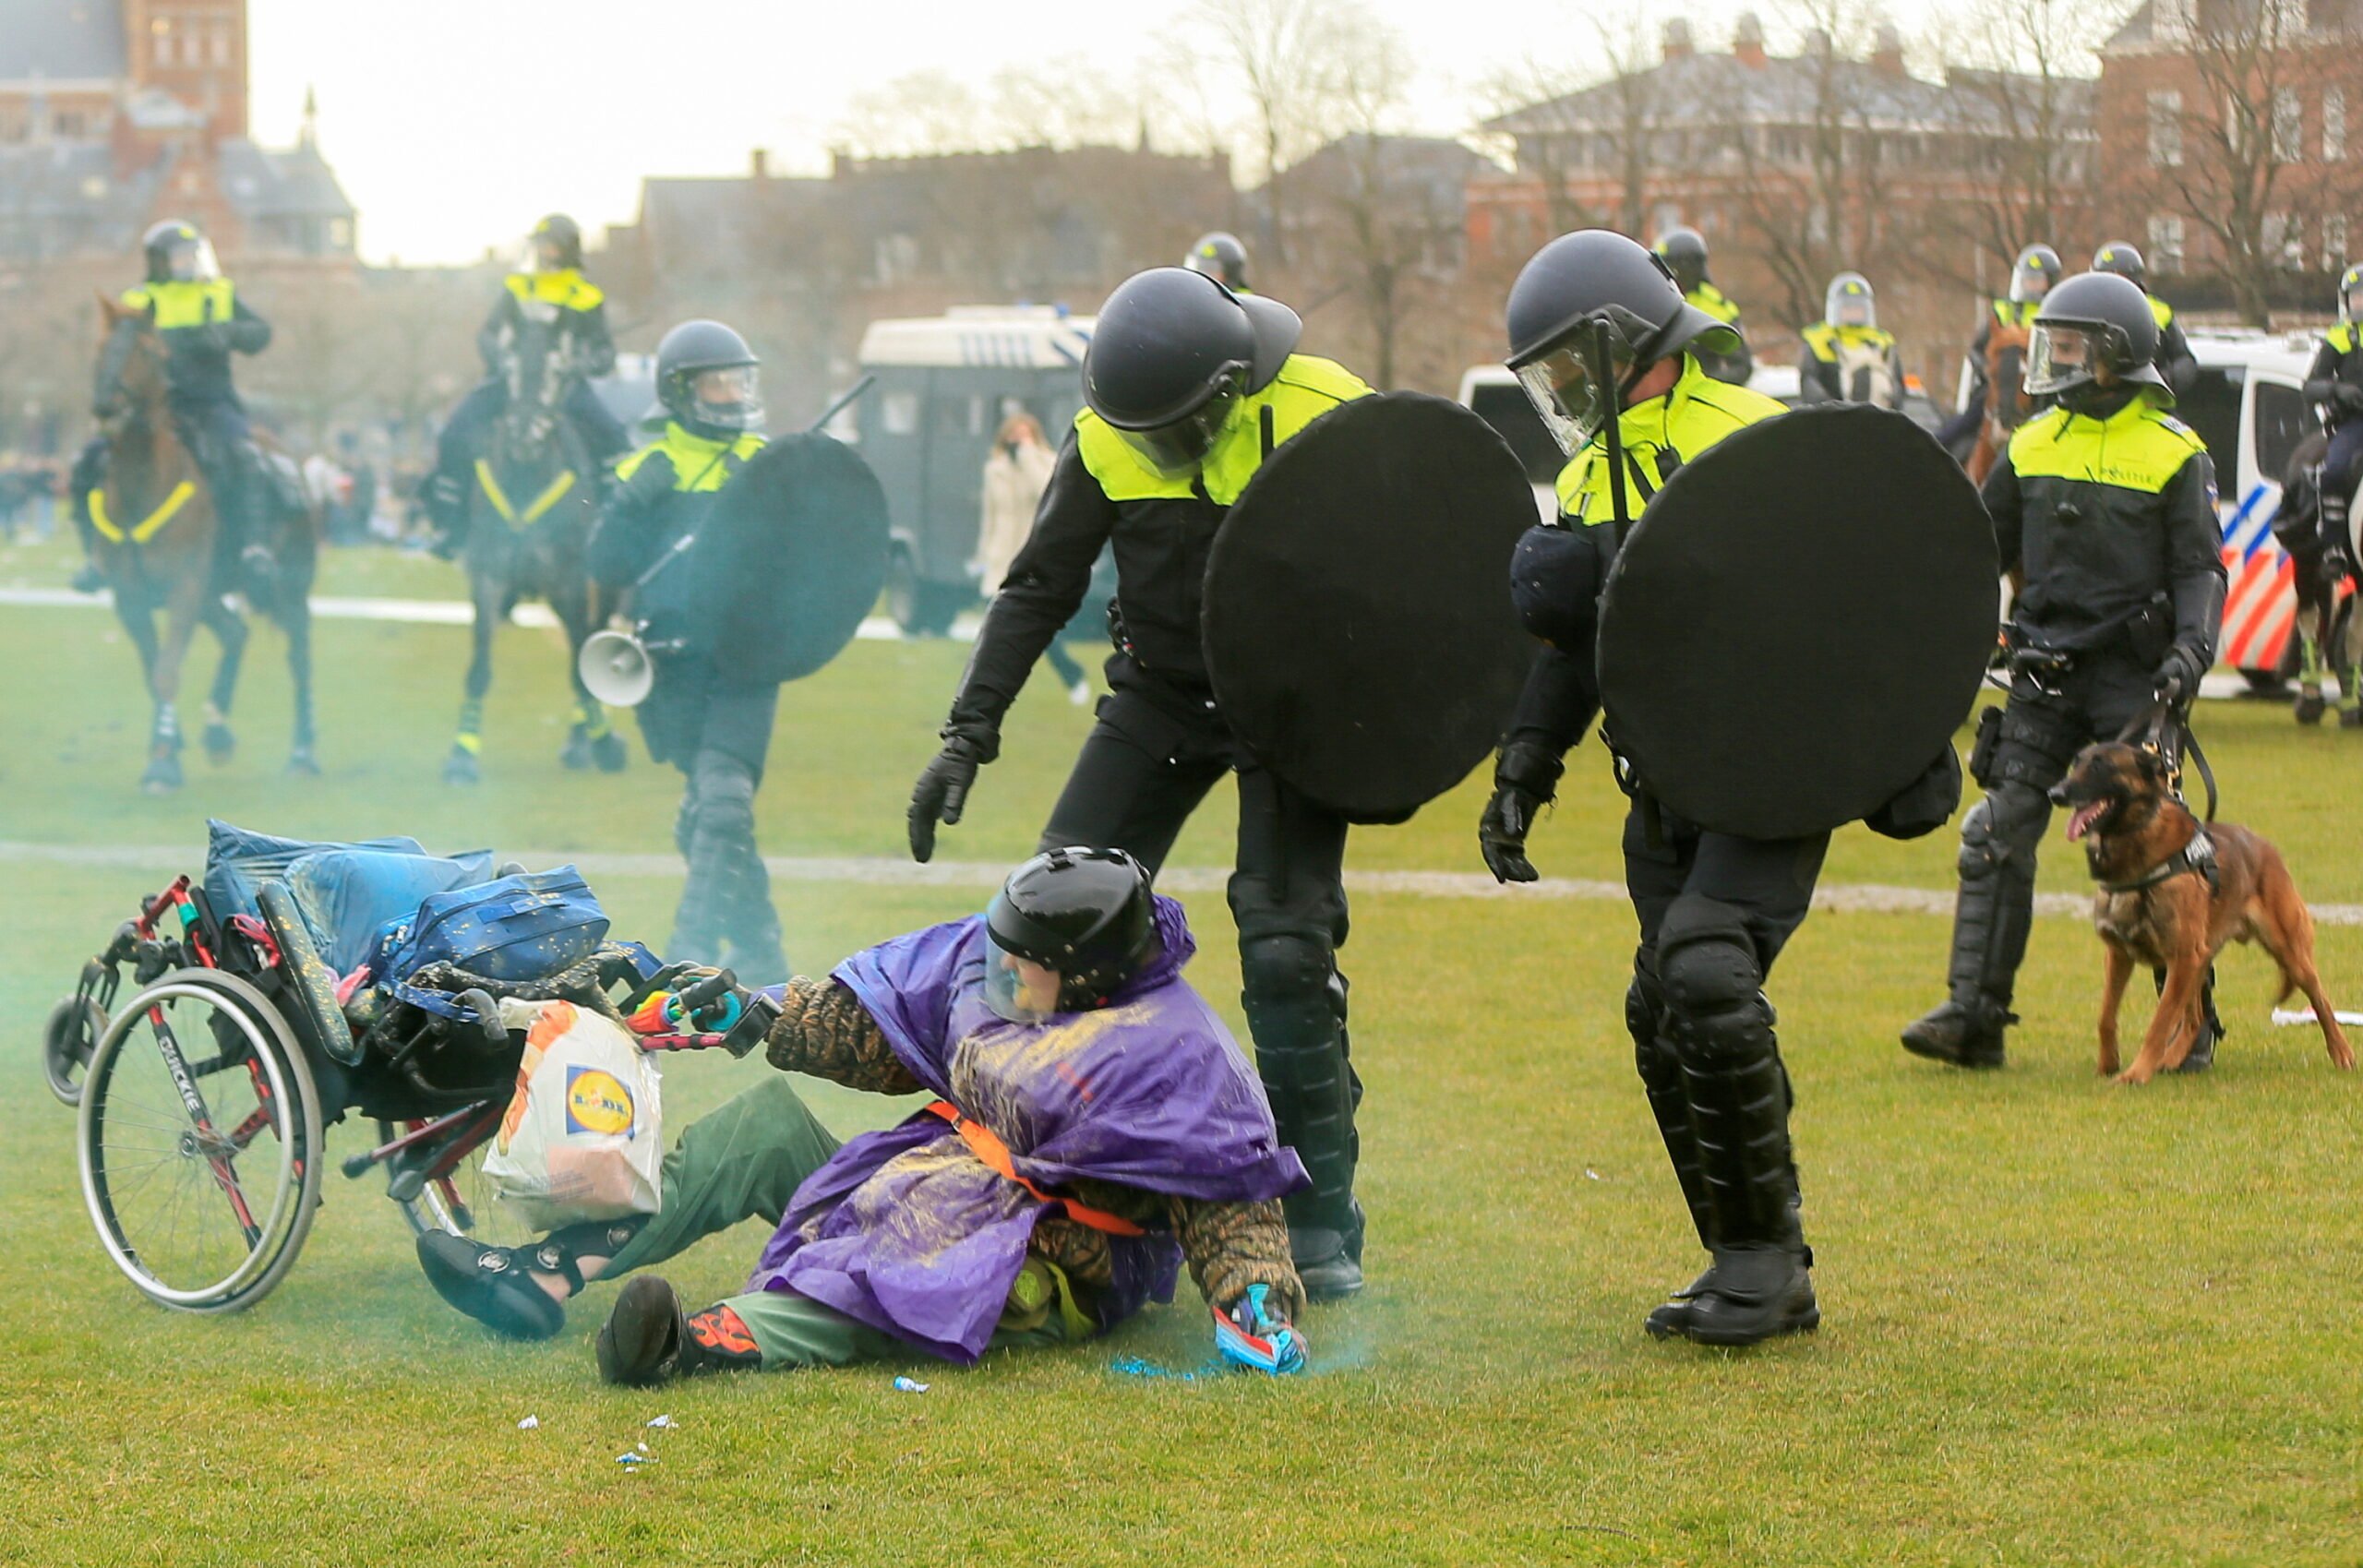 Οι εκτεταμένες ταραχές στο κλείδωμα του Σαββατοκύριακου στην Ολλανδία, καταδικάζει ο πρωθυπουργός Rutte